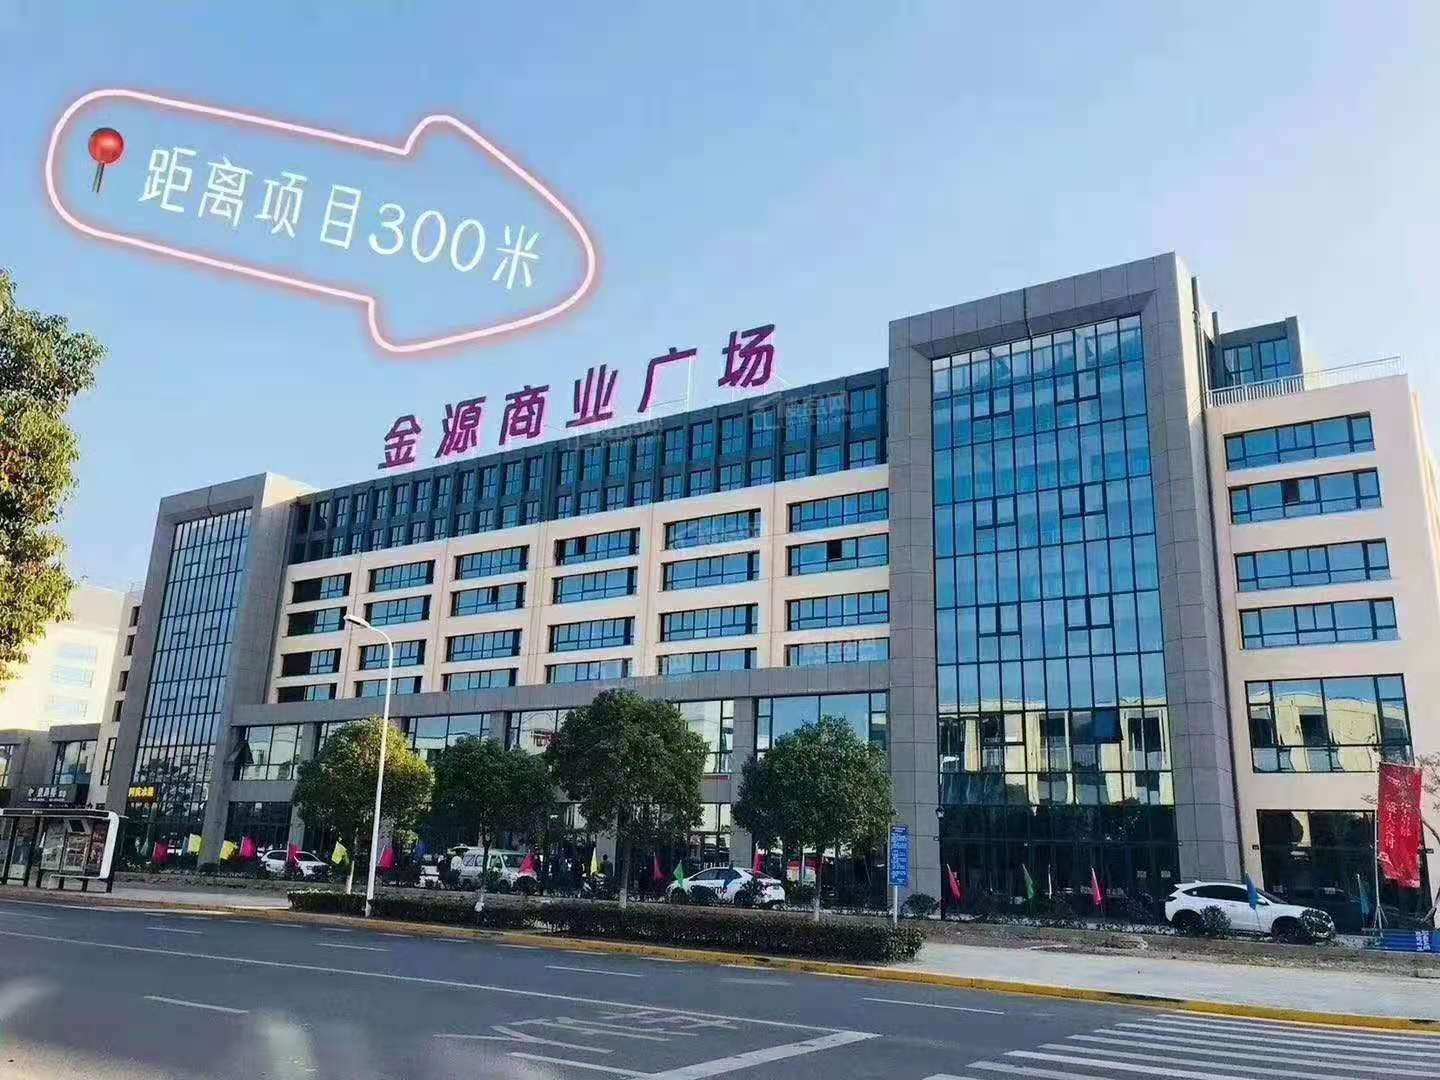 江南春晓 周边商业广场